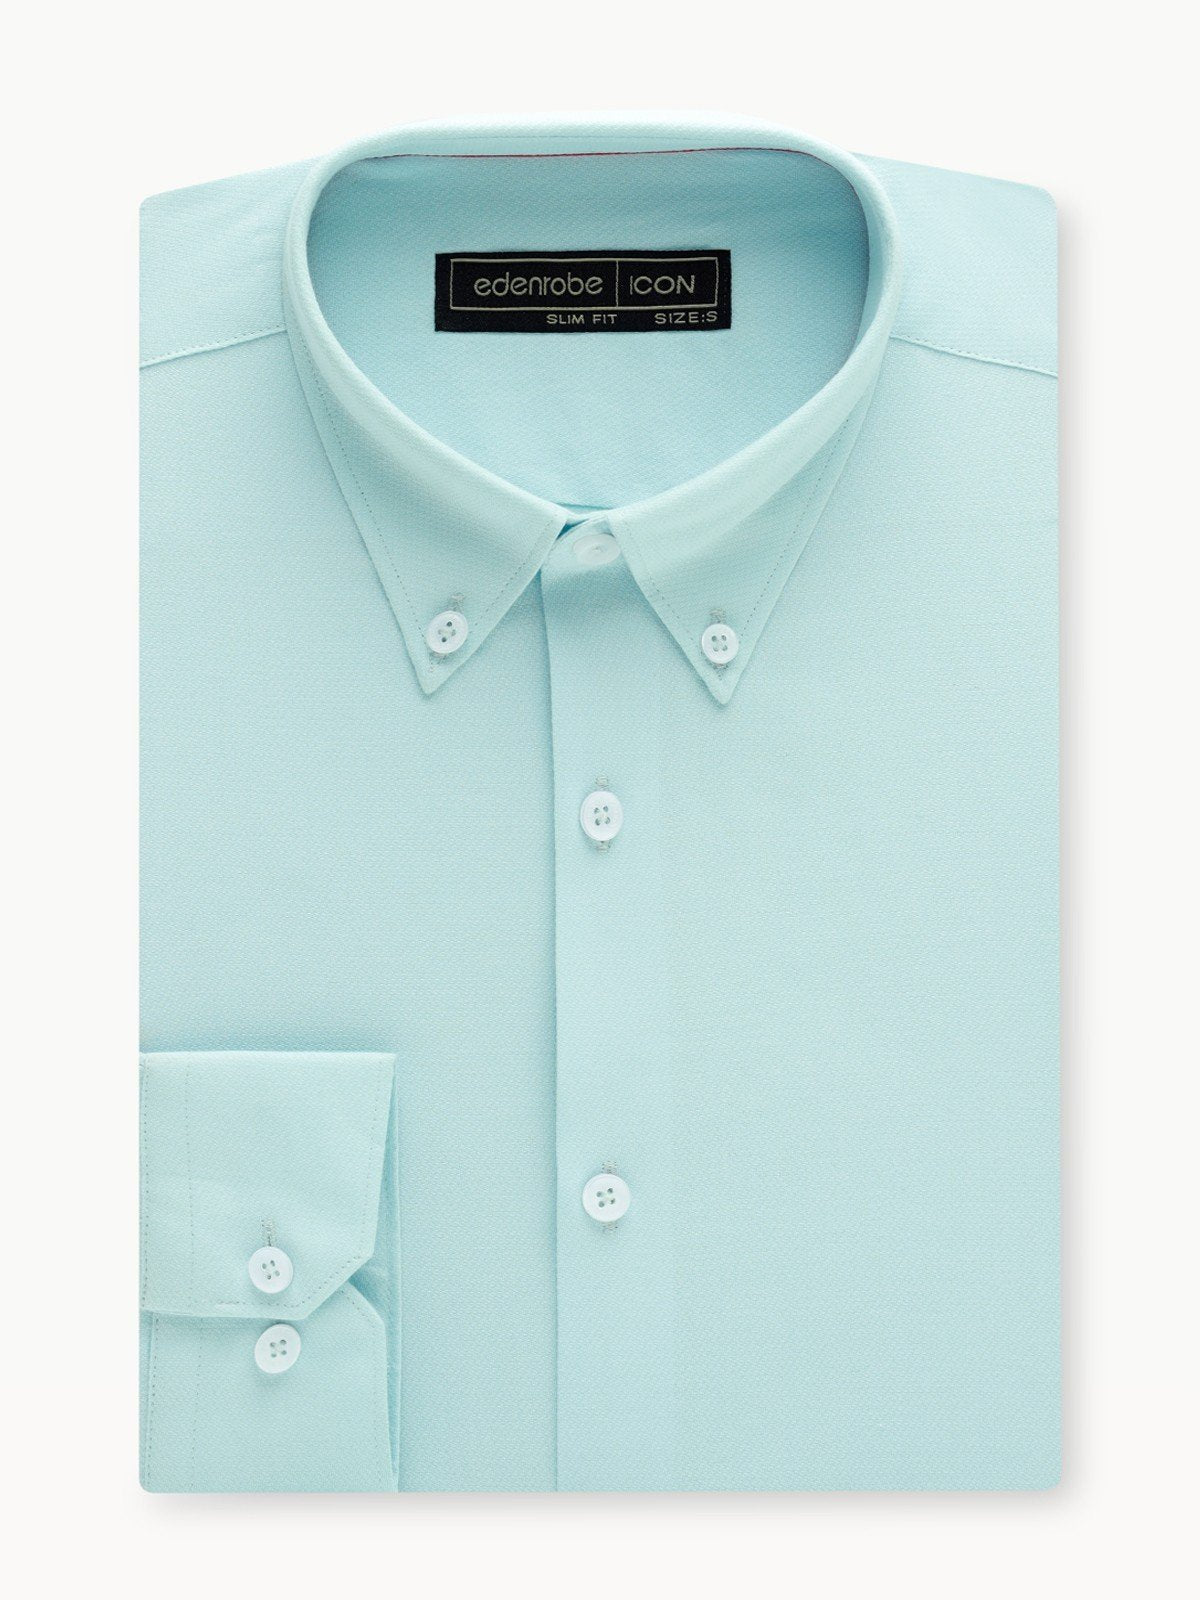 Men's Sky Blue Shirt - EMTSI23-50295